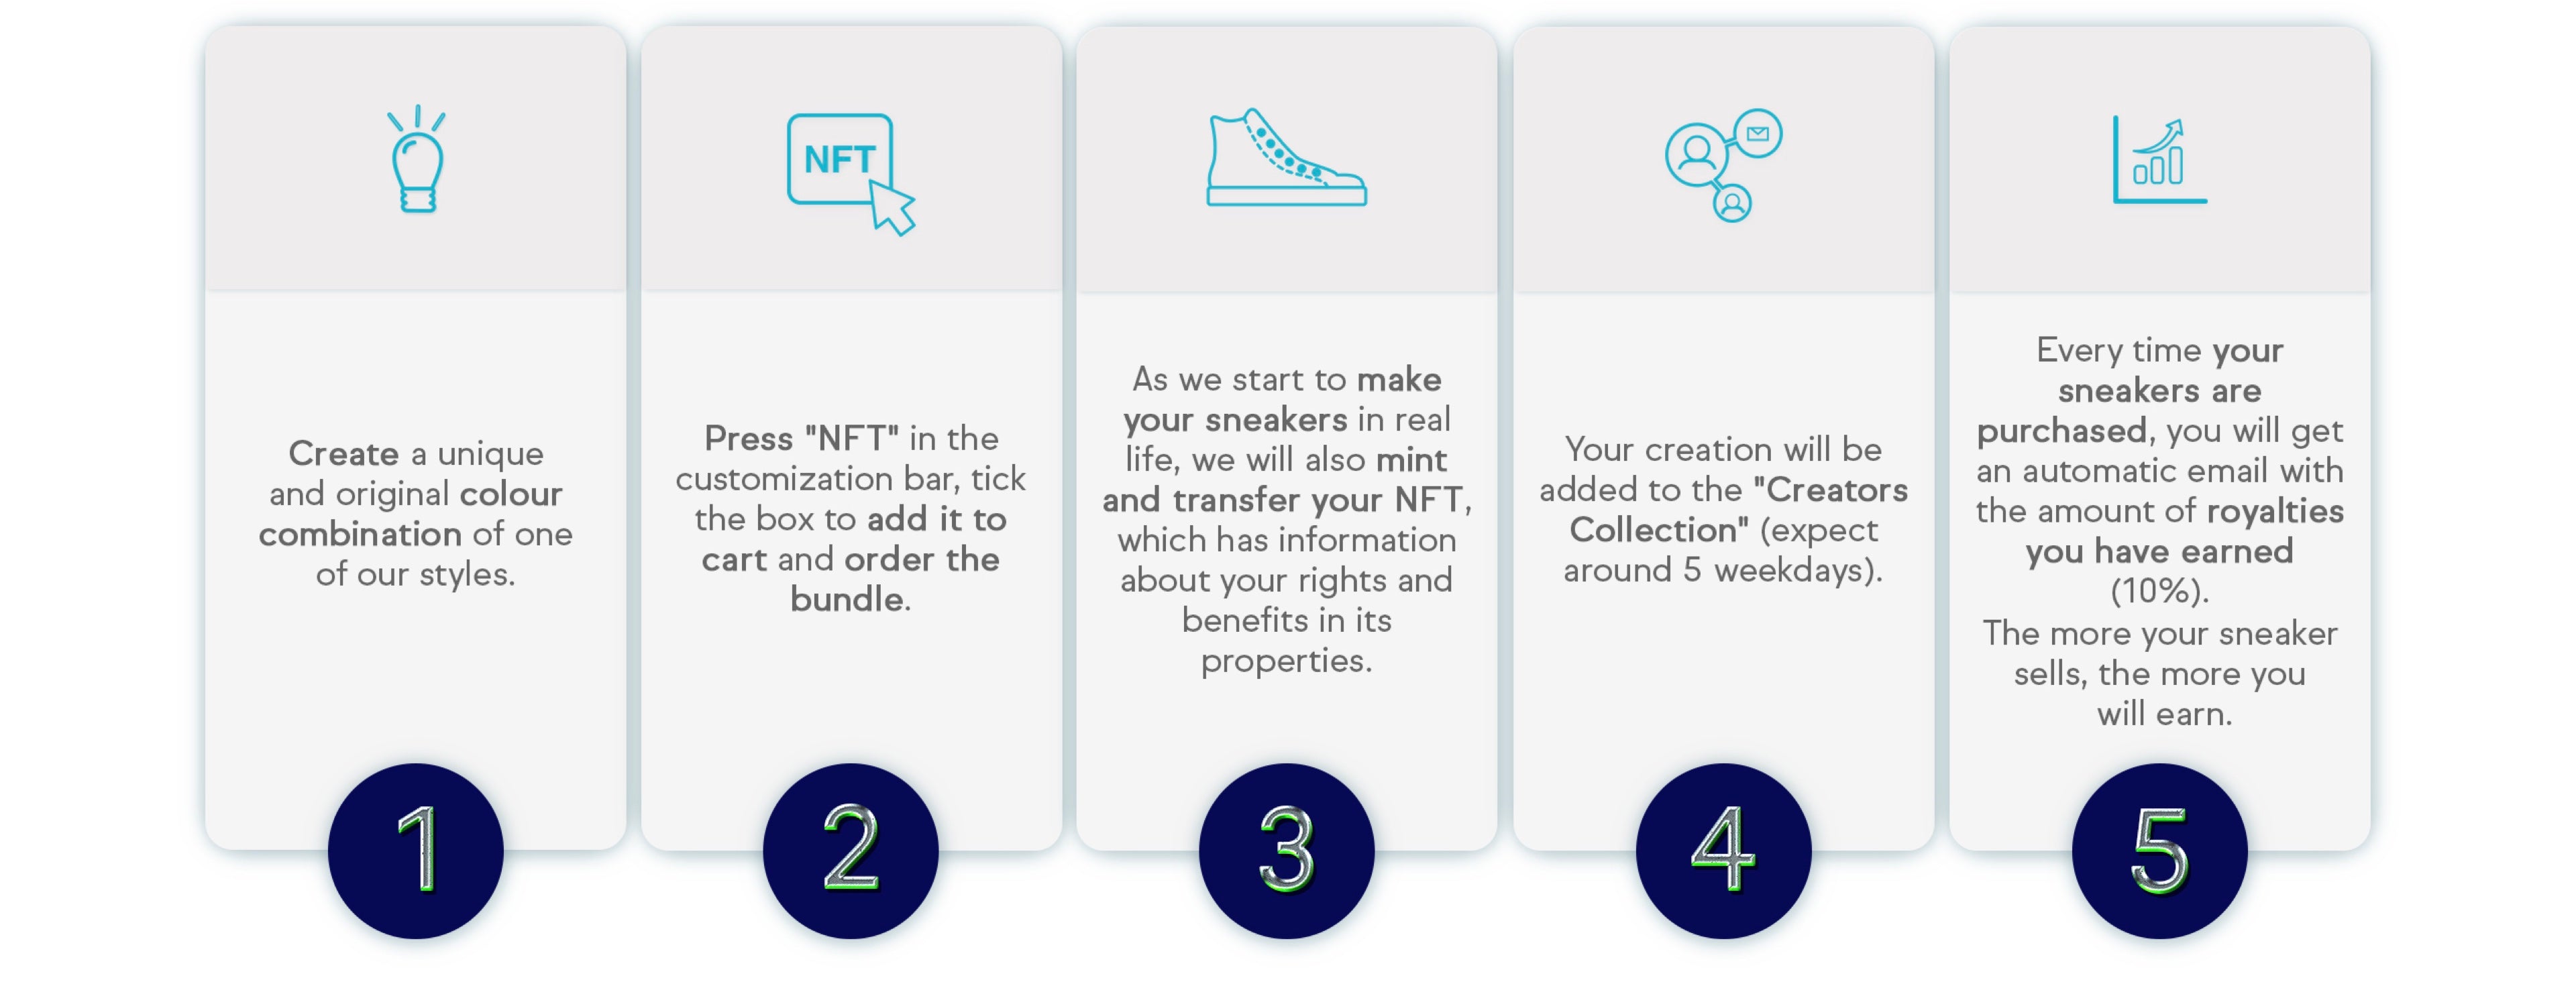 Información para crear zapatos a medida NFT.